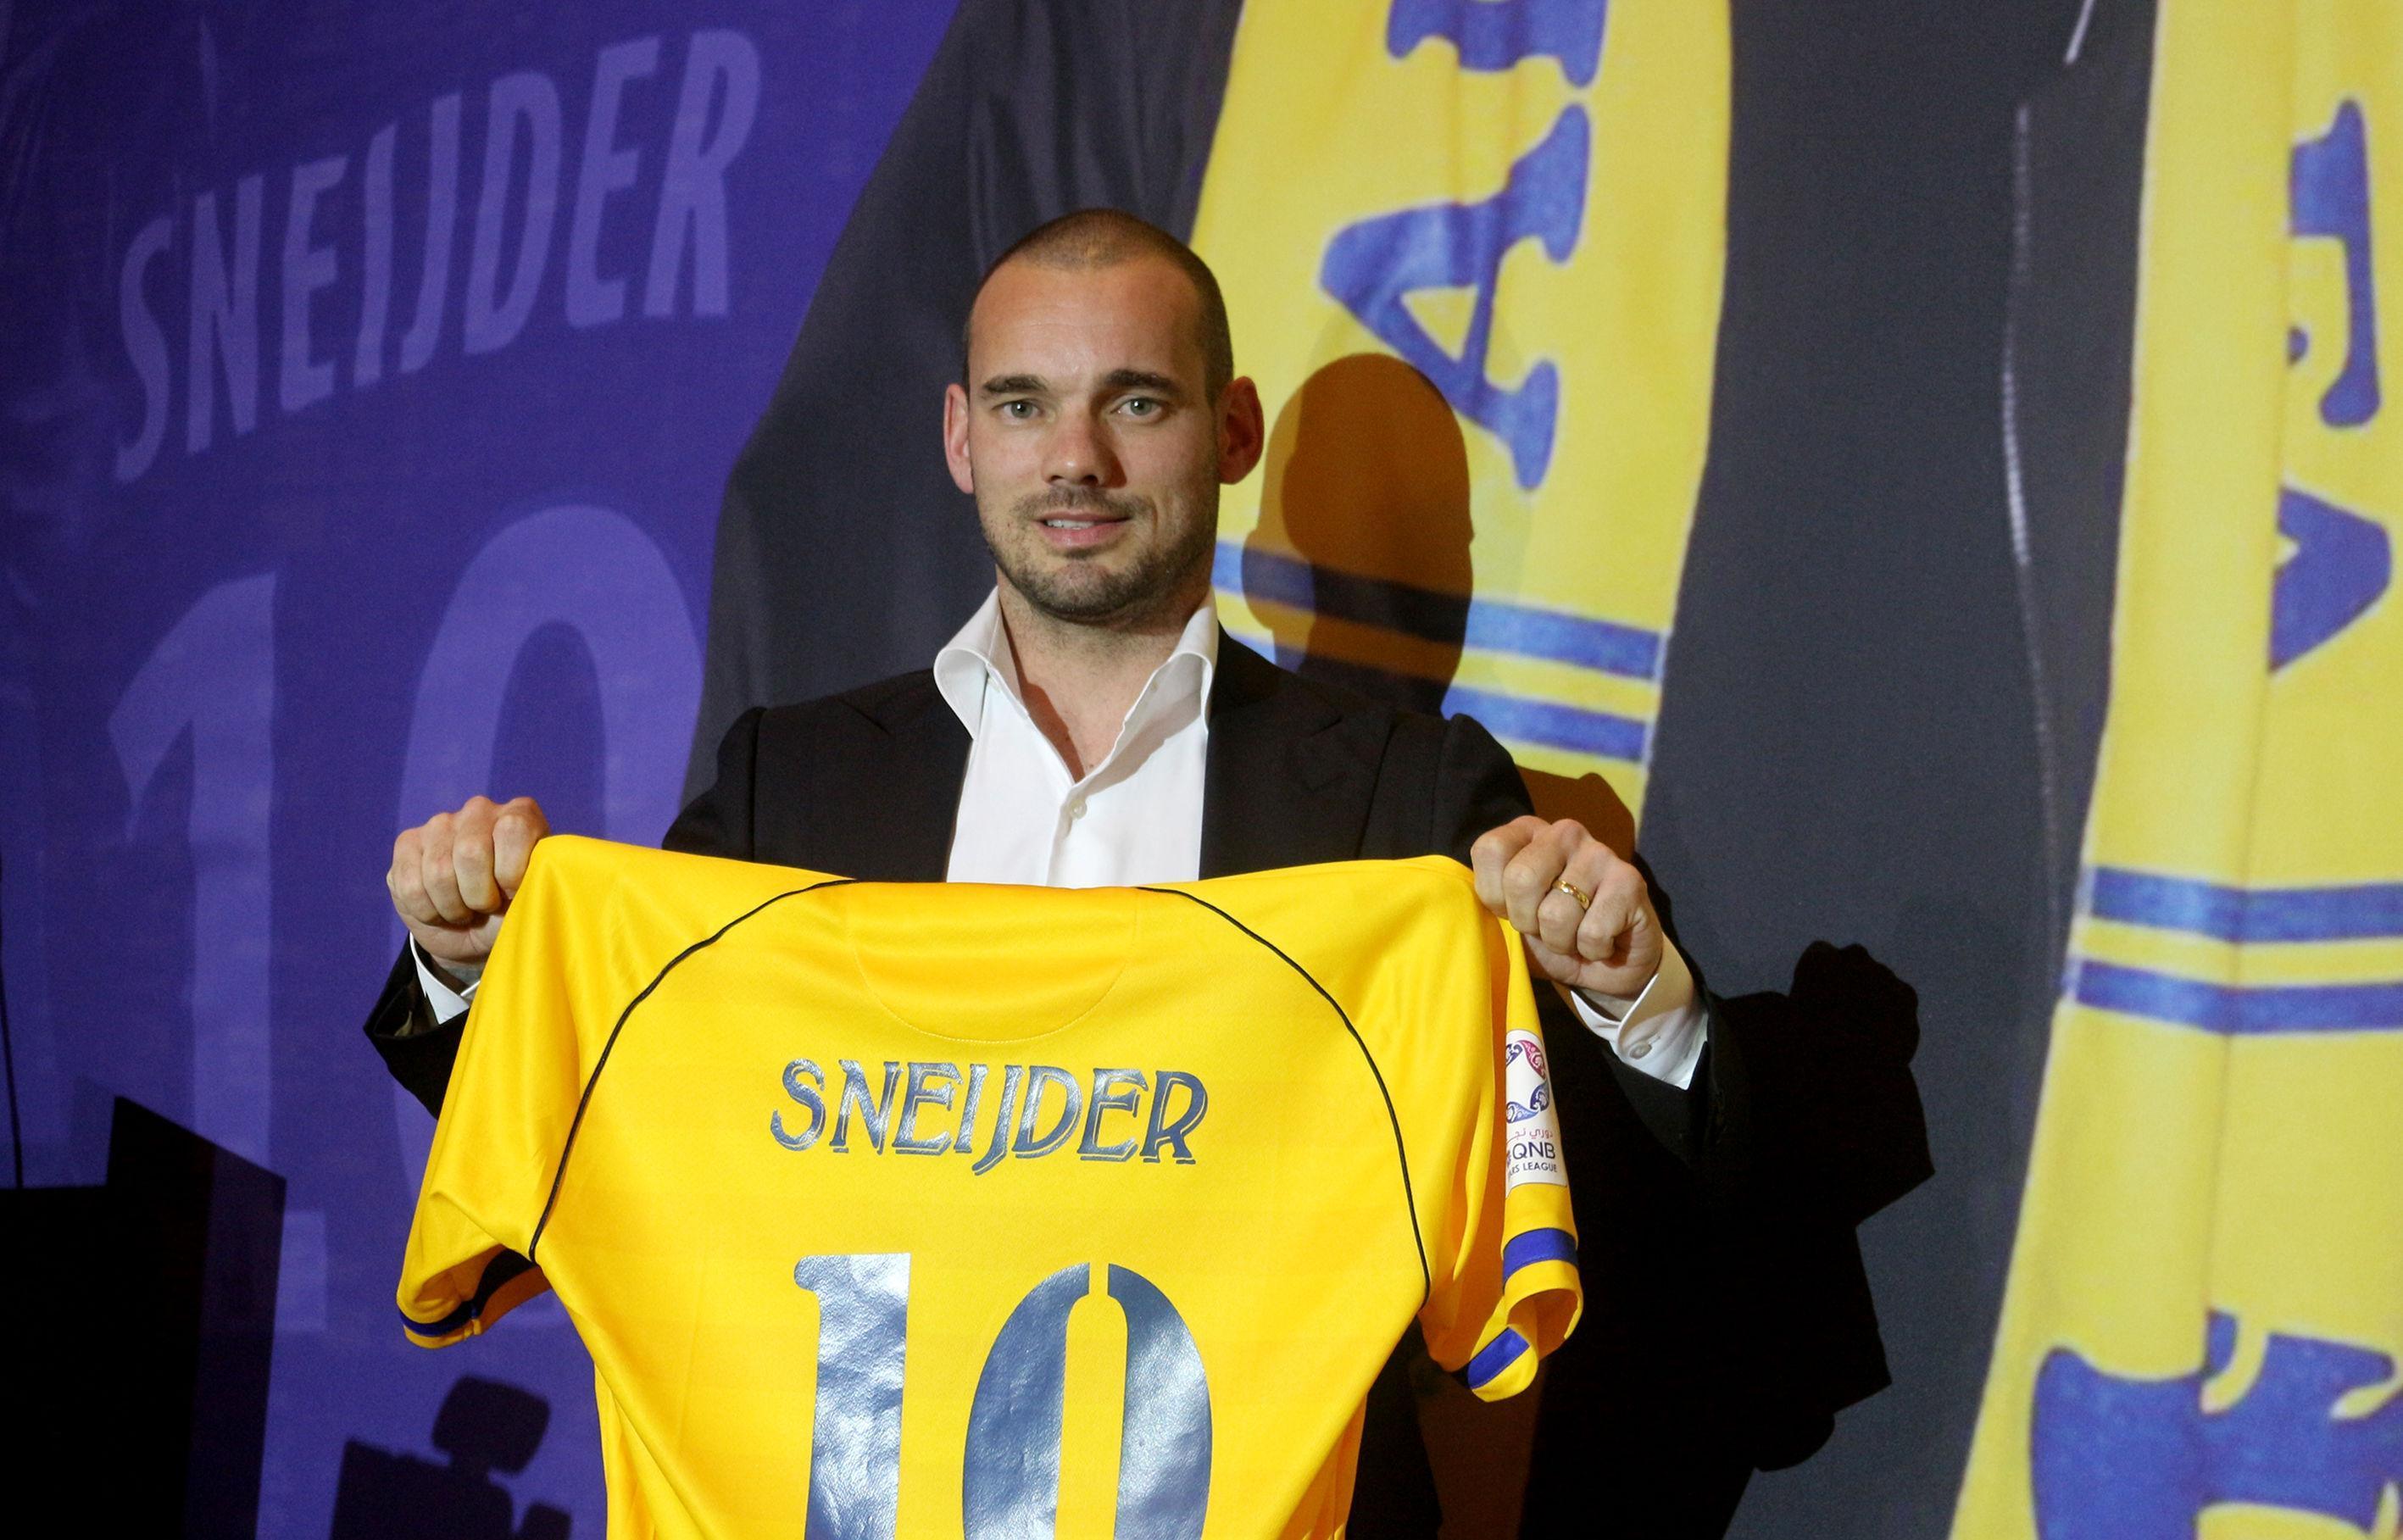 Wesley Sneijder basına tanıtıldı